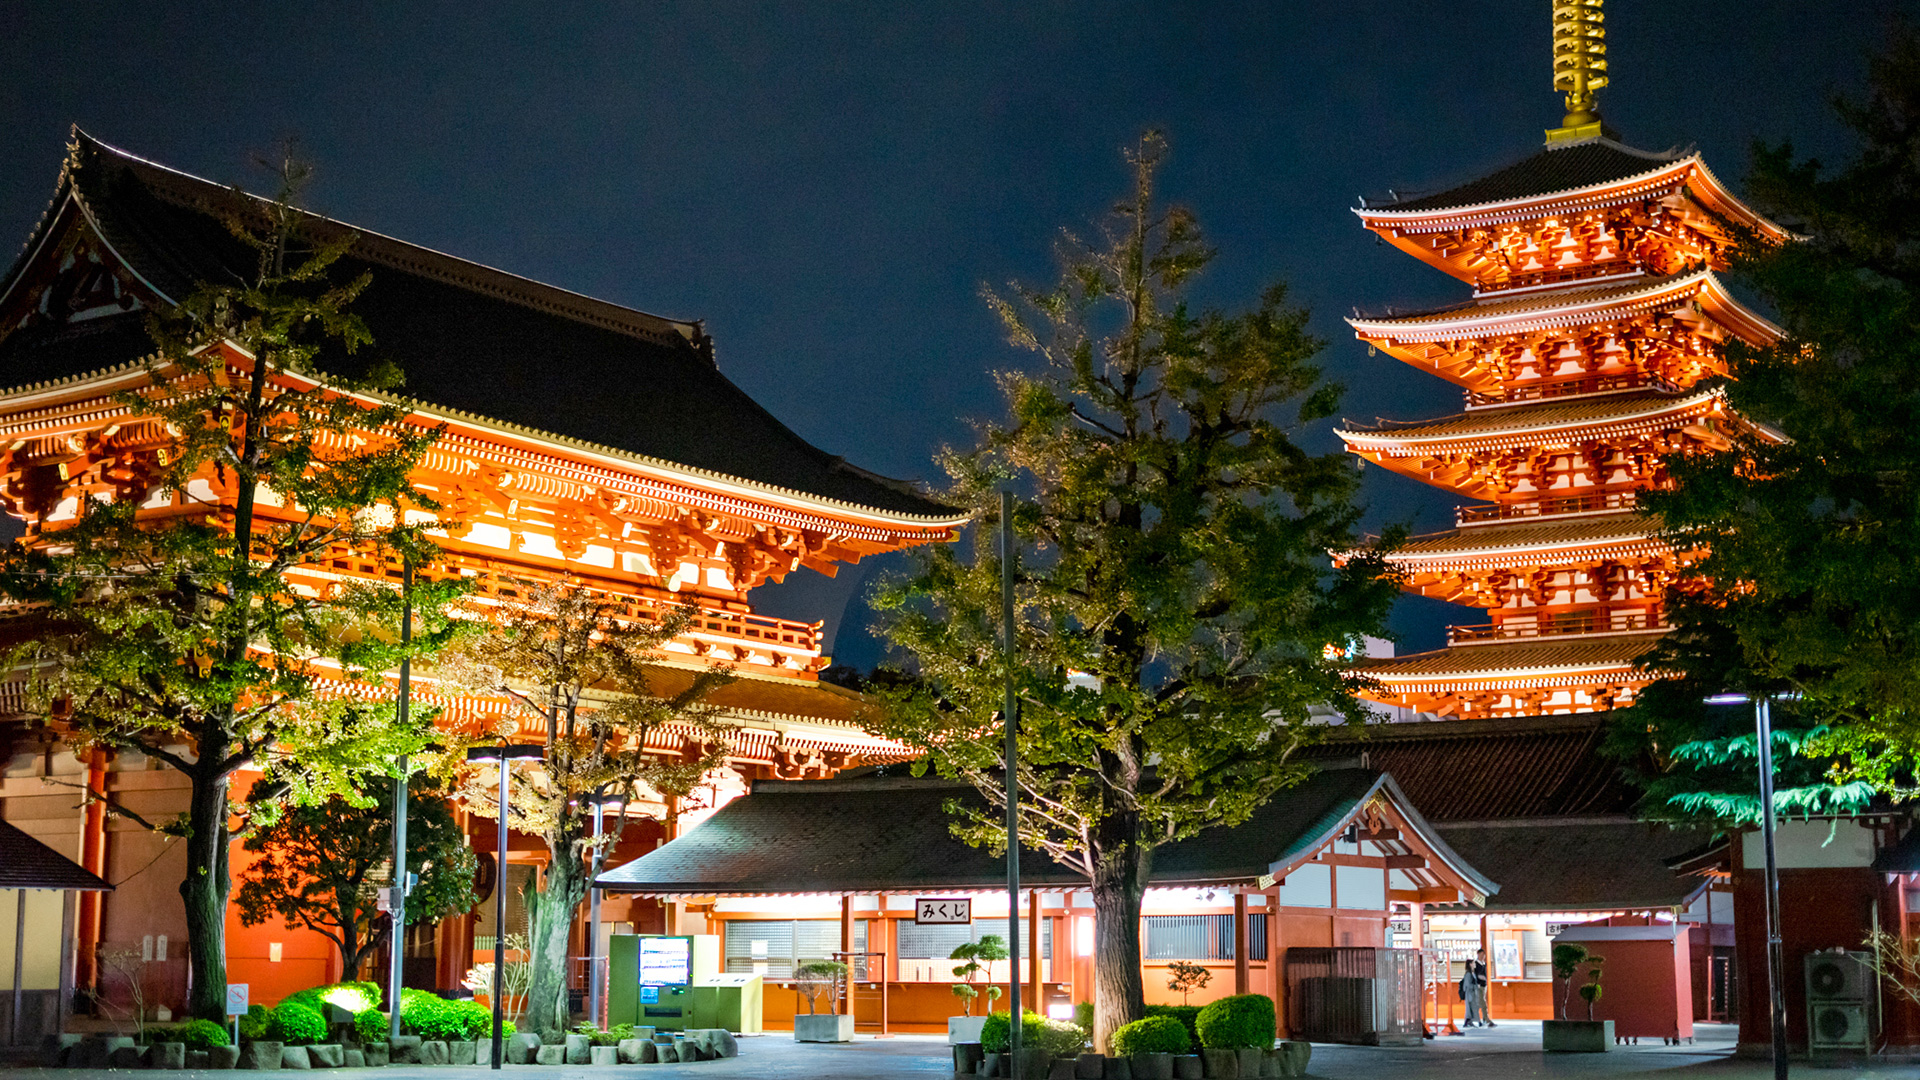 Superbes vues nocturnes de Tokyo / Site officiel du tourisme de Tokyo